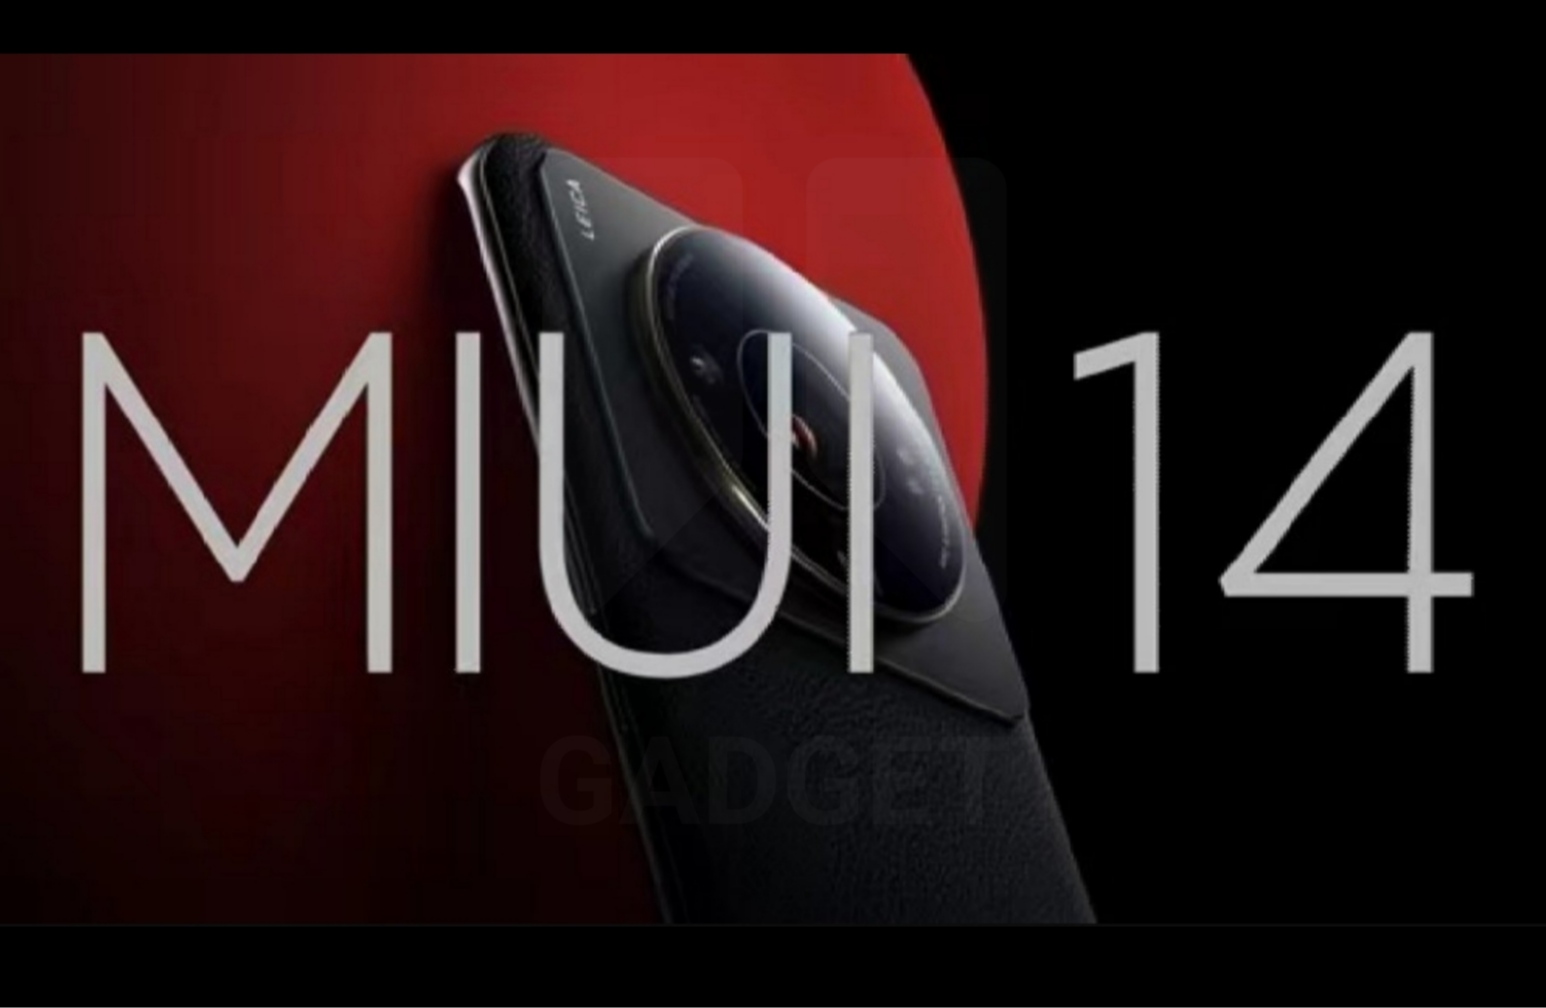 Xiaomi Kenalkan Desain MIUI 14 jadi Sorotan